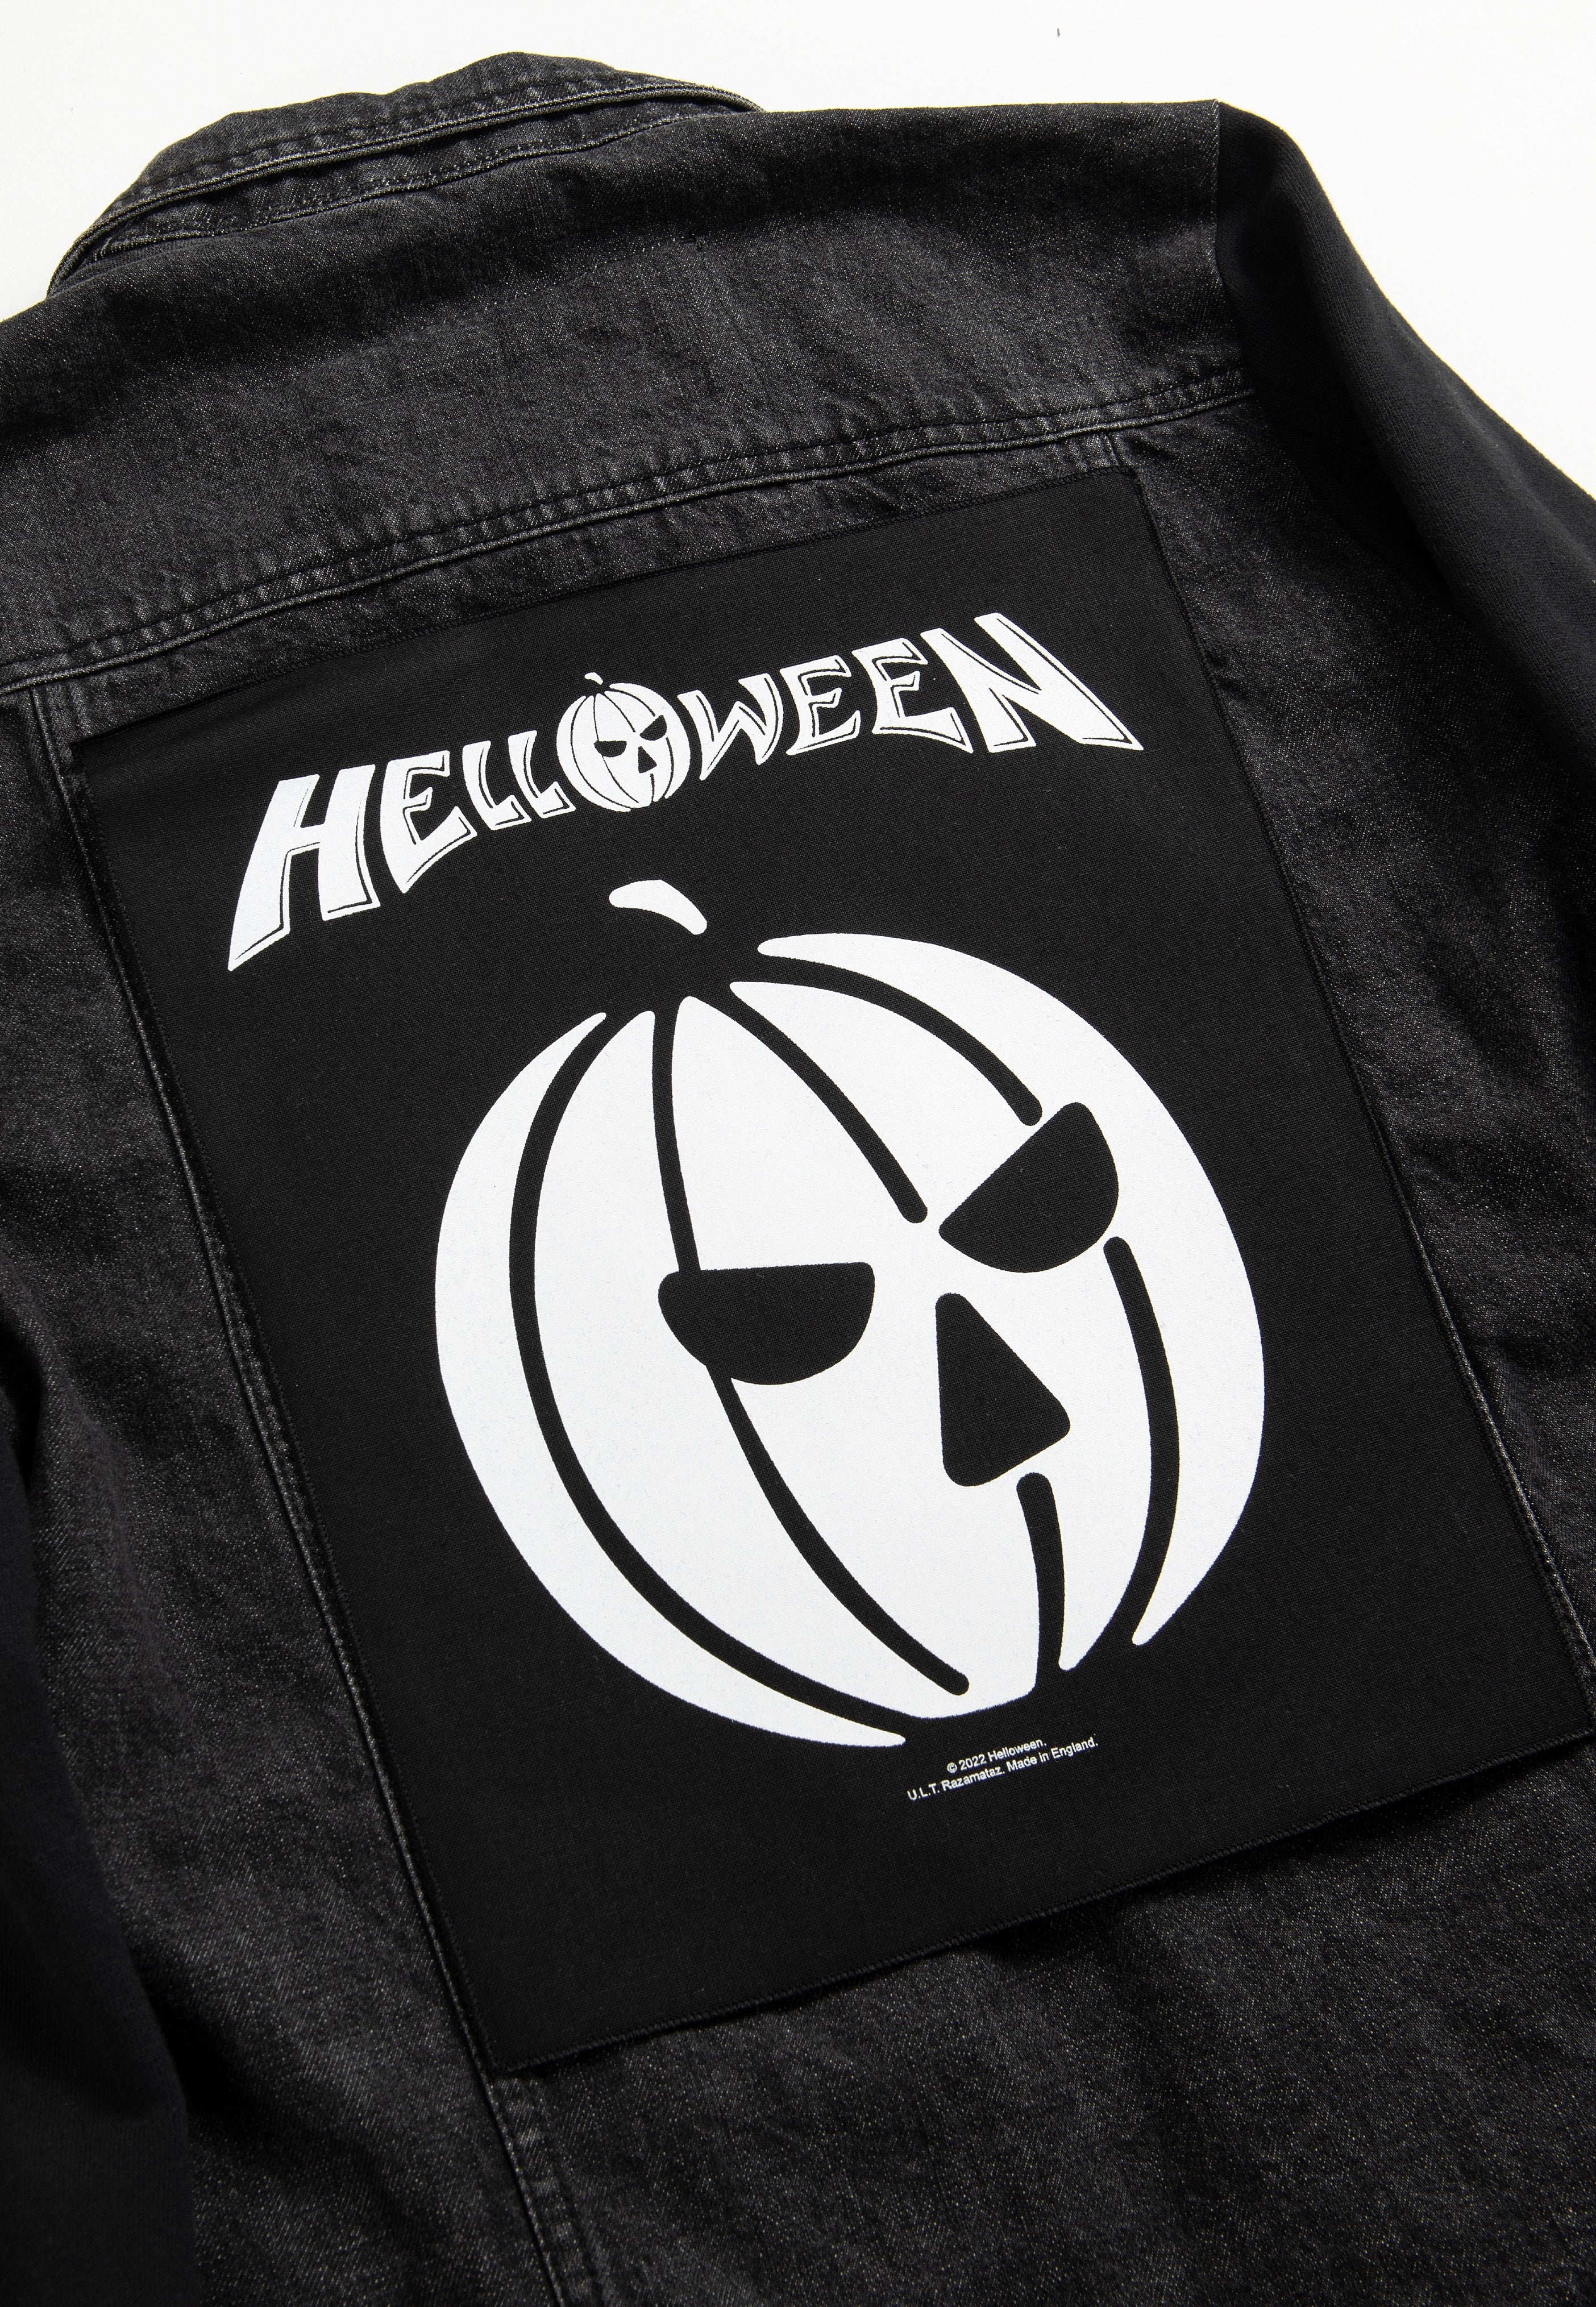 Helloween - Pumpkin - Backpatch